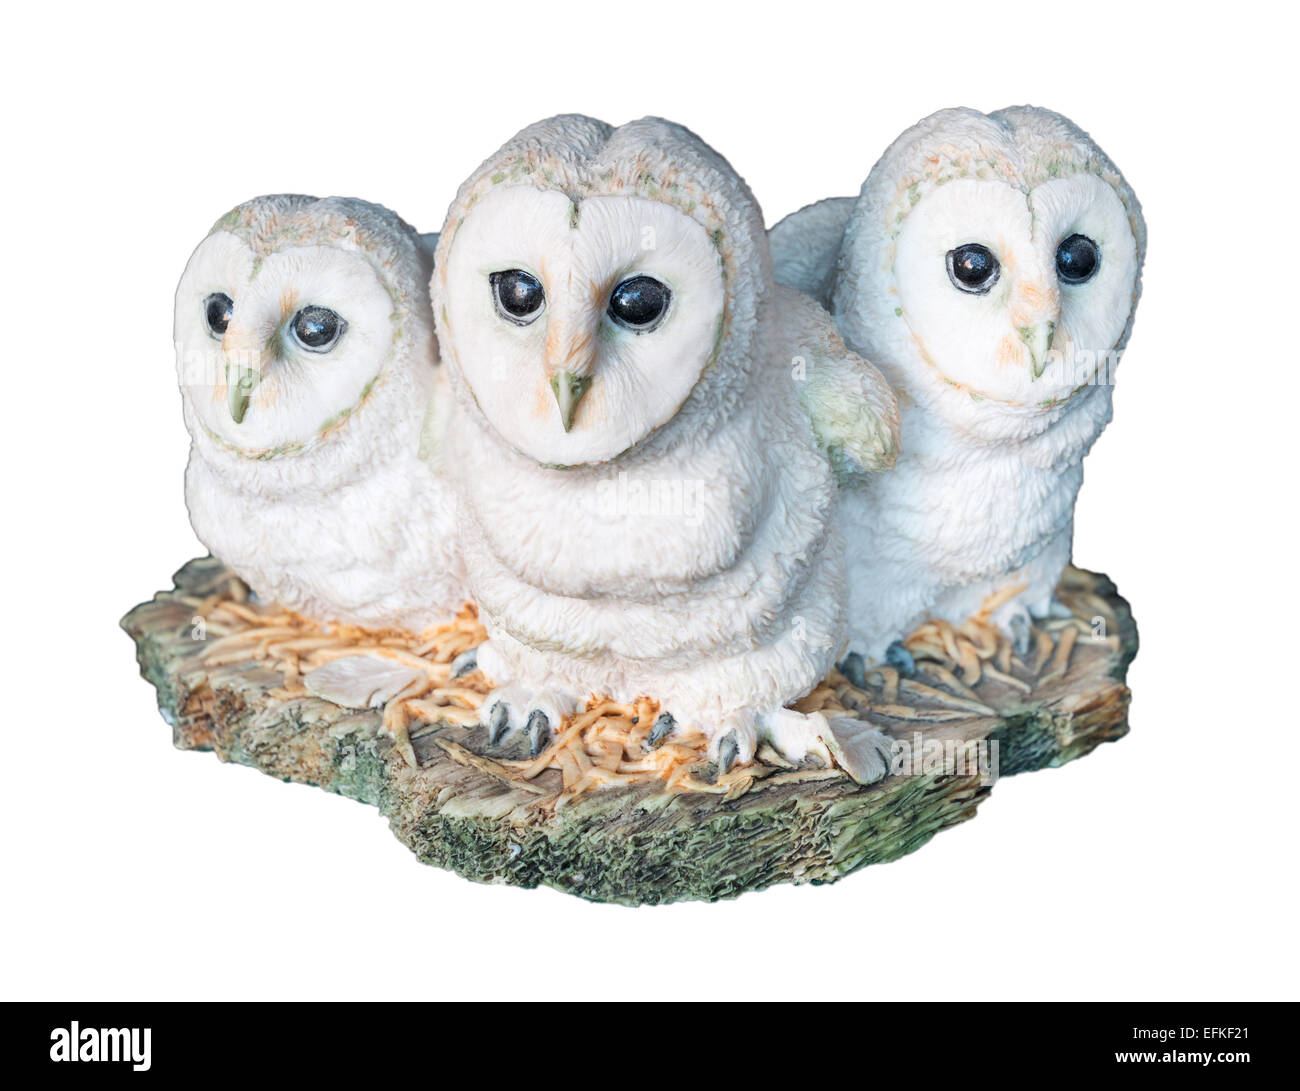 Figurine Border Fine Arts représentant trois jeunes effraies des clochers ou owlets, isolé sur fond blanc Banque D'Images